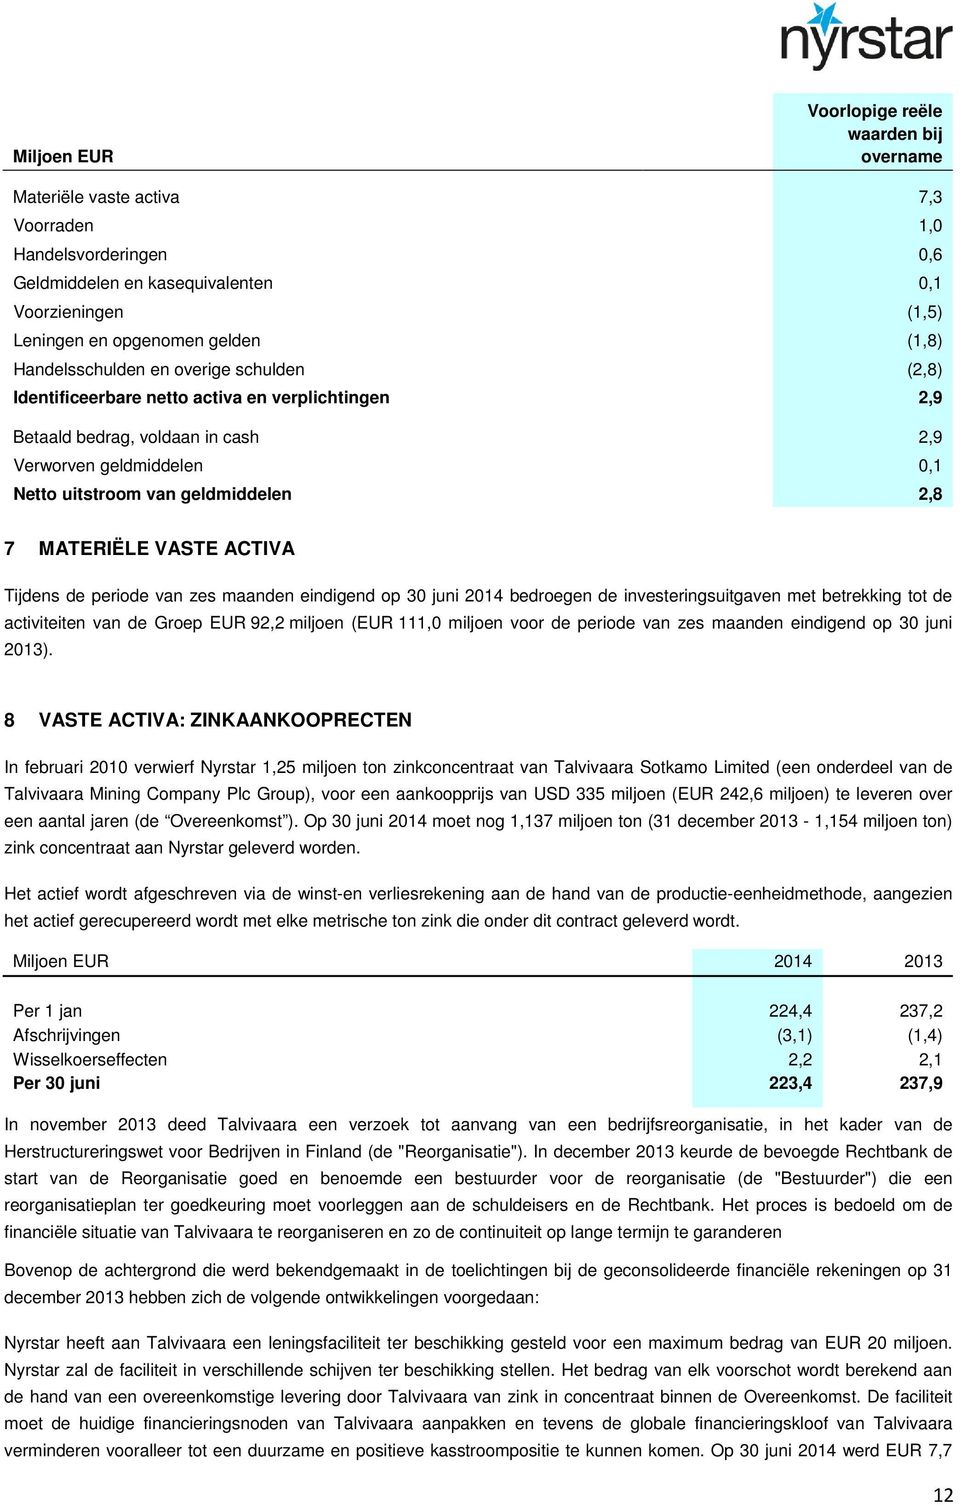 7 MATERIËLE VASTE ACTIVA Tijdens de periode van zes maanden eindigend op 30 juni 2014 bedroegen de investeringsuitgaven met betrekking de activiteiten van de Groep EUR 92,2 miljoen (EUR 111,0 miljoen